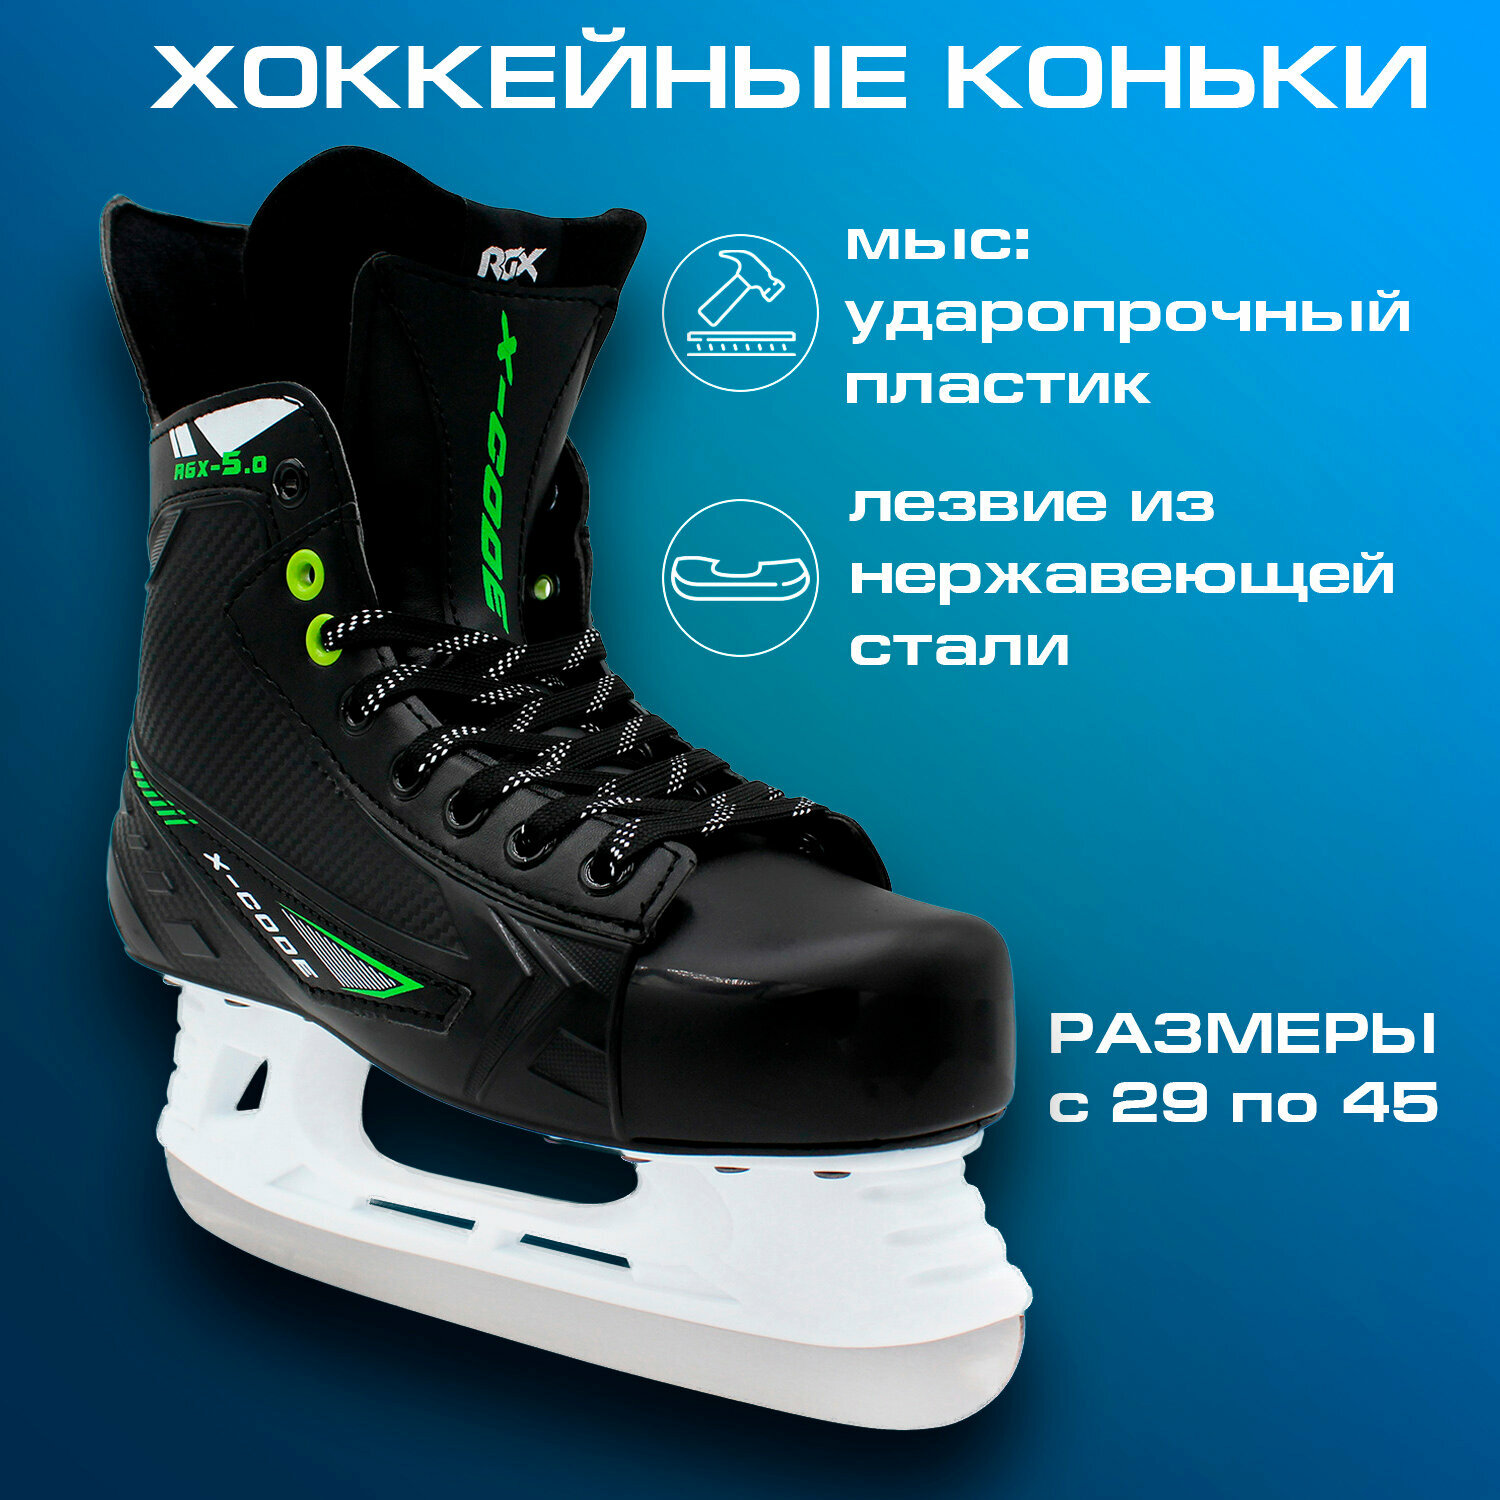 Хоккейные коньки Rgx-5.0 X-code Green размер 36